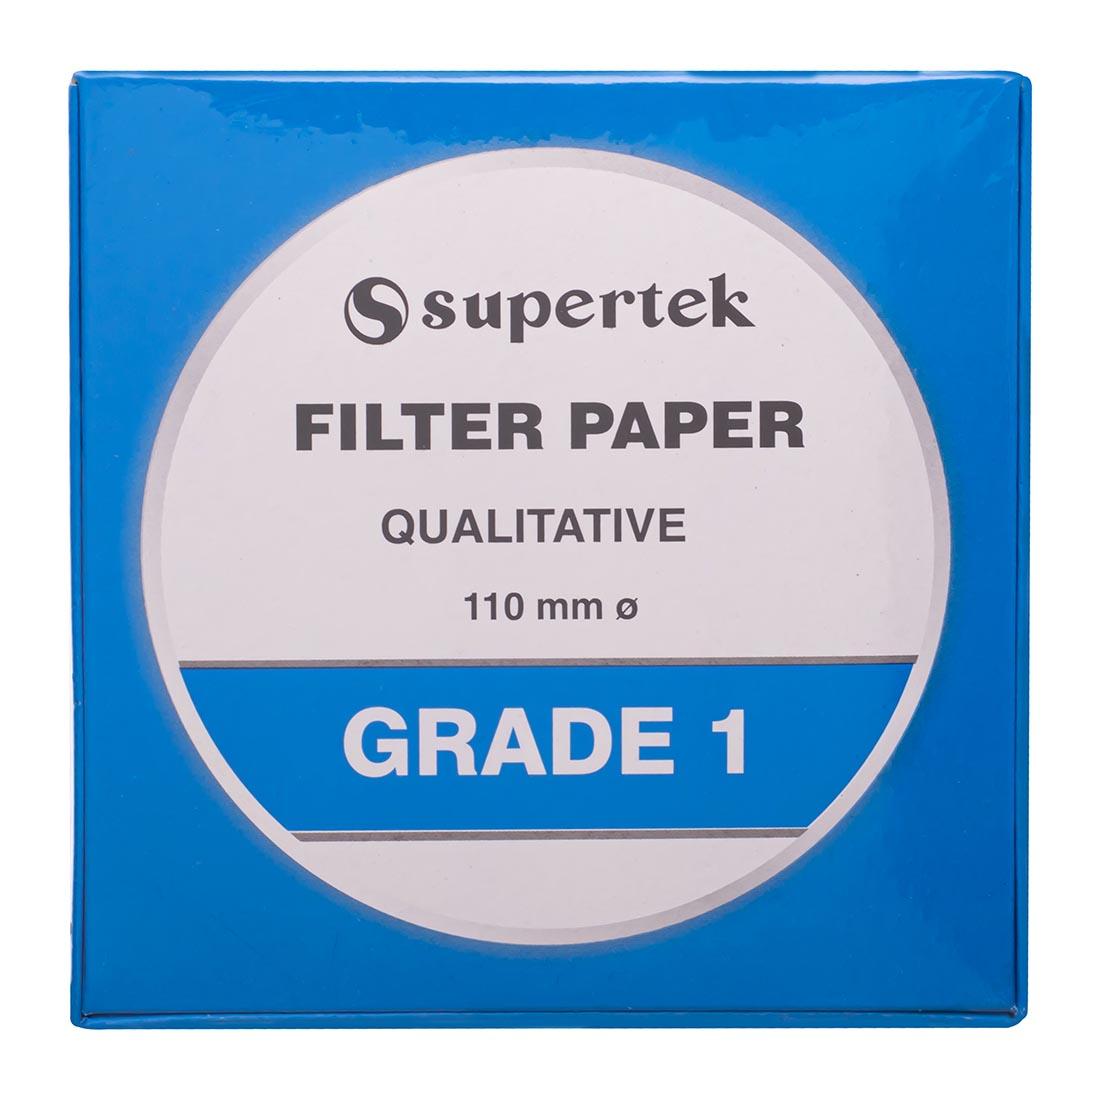 Grade 1 Filter Paper